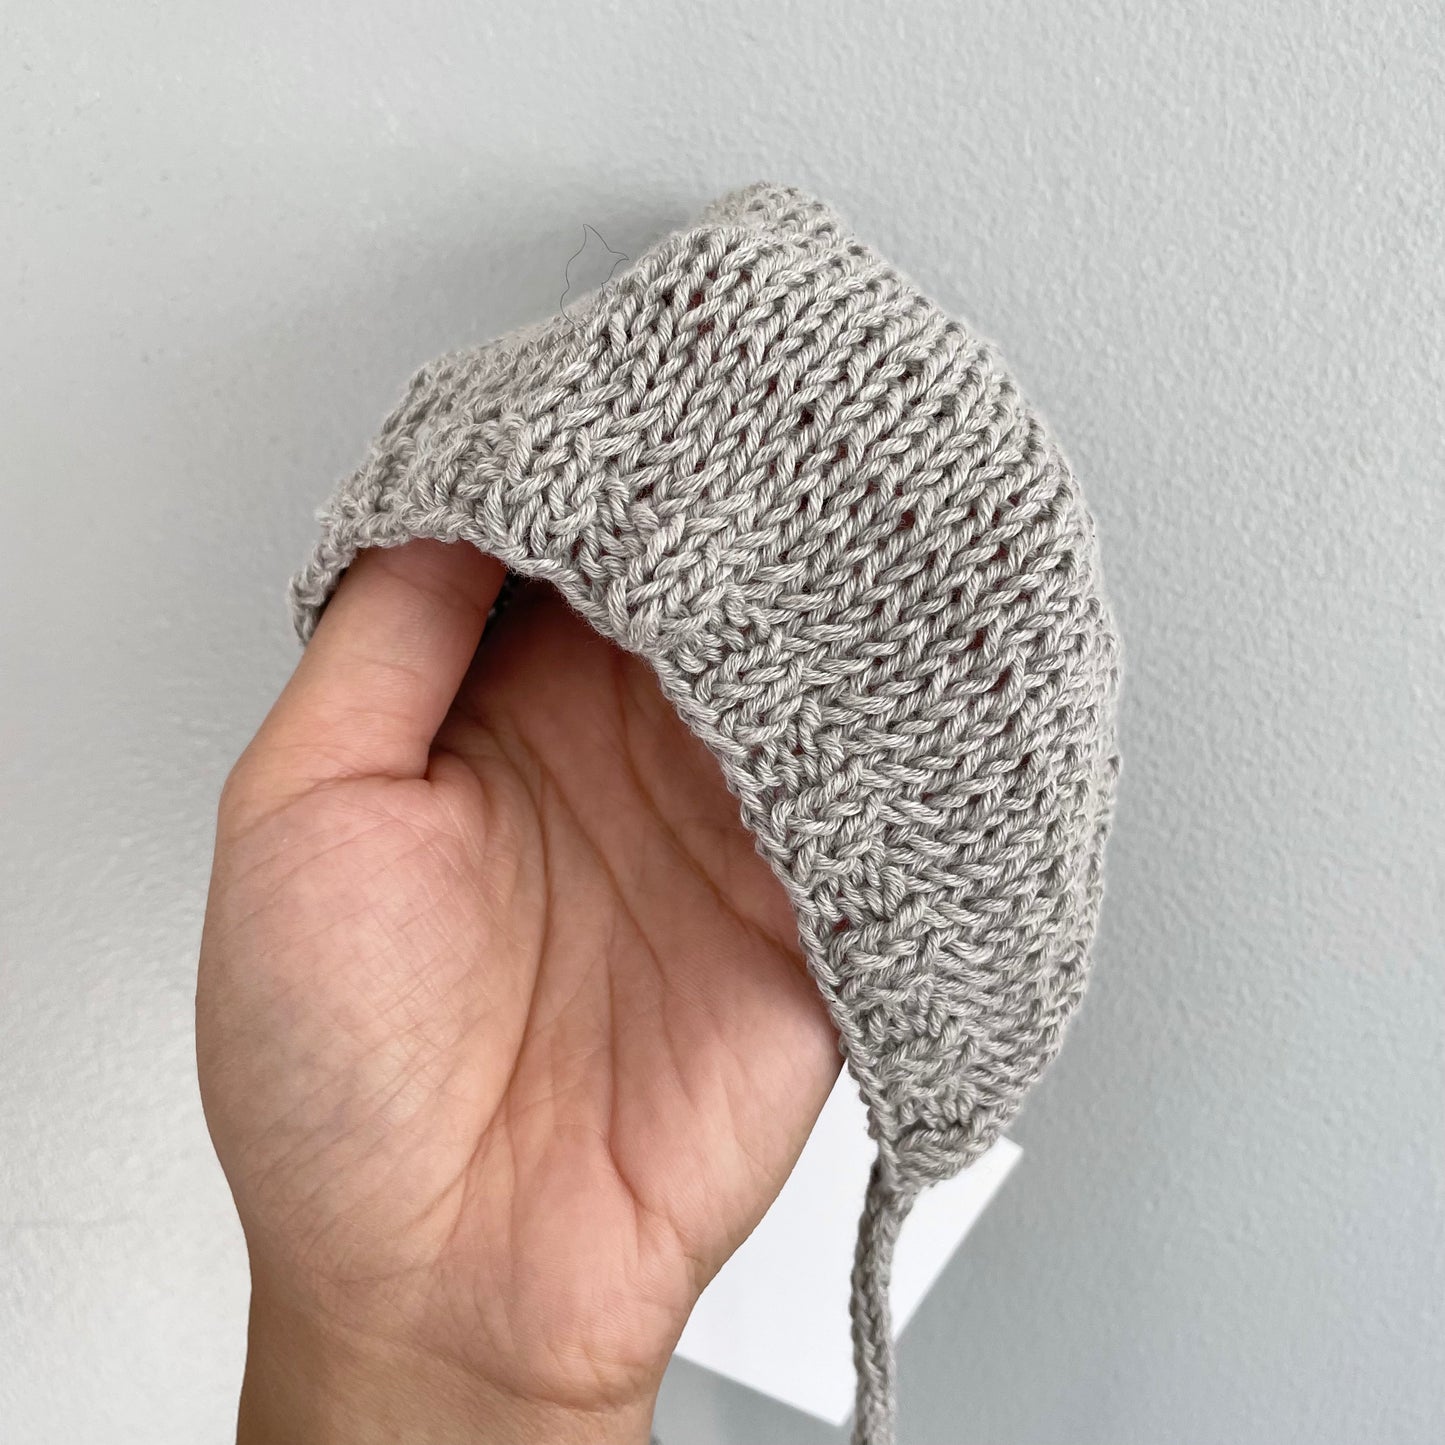 tetote / Organic cotton bonnet / 0-3M